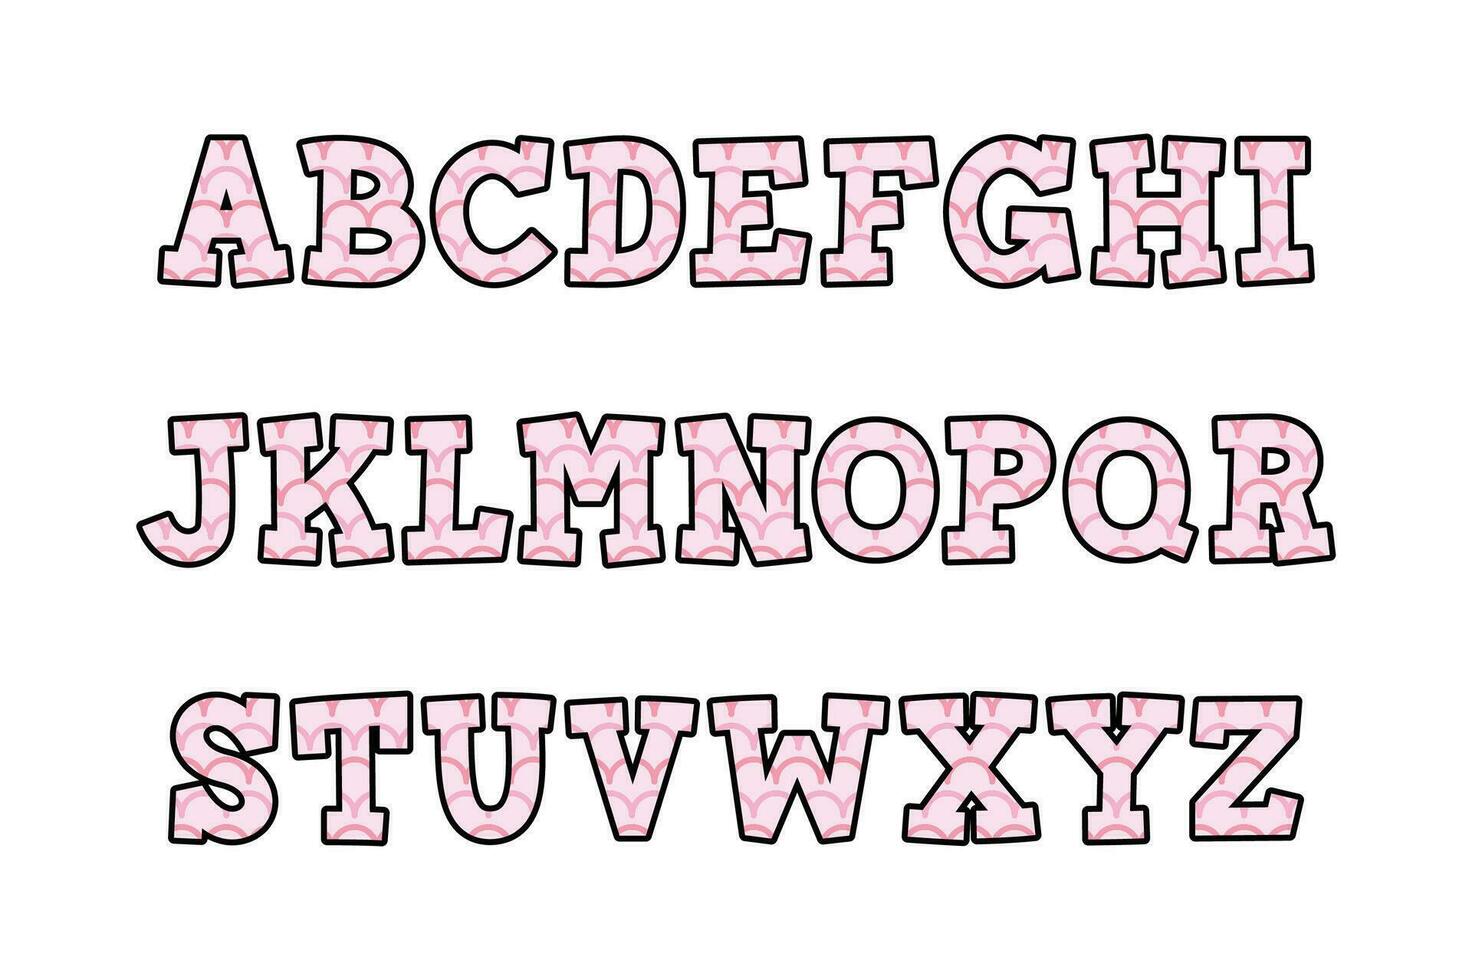 versatile collezione di Magia onda alfabeto lettere per vario usi vettore